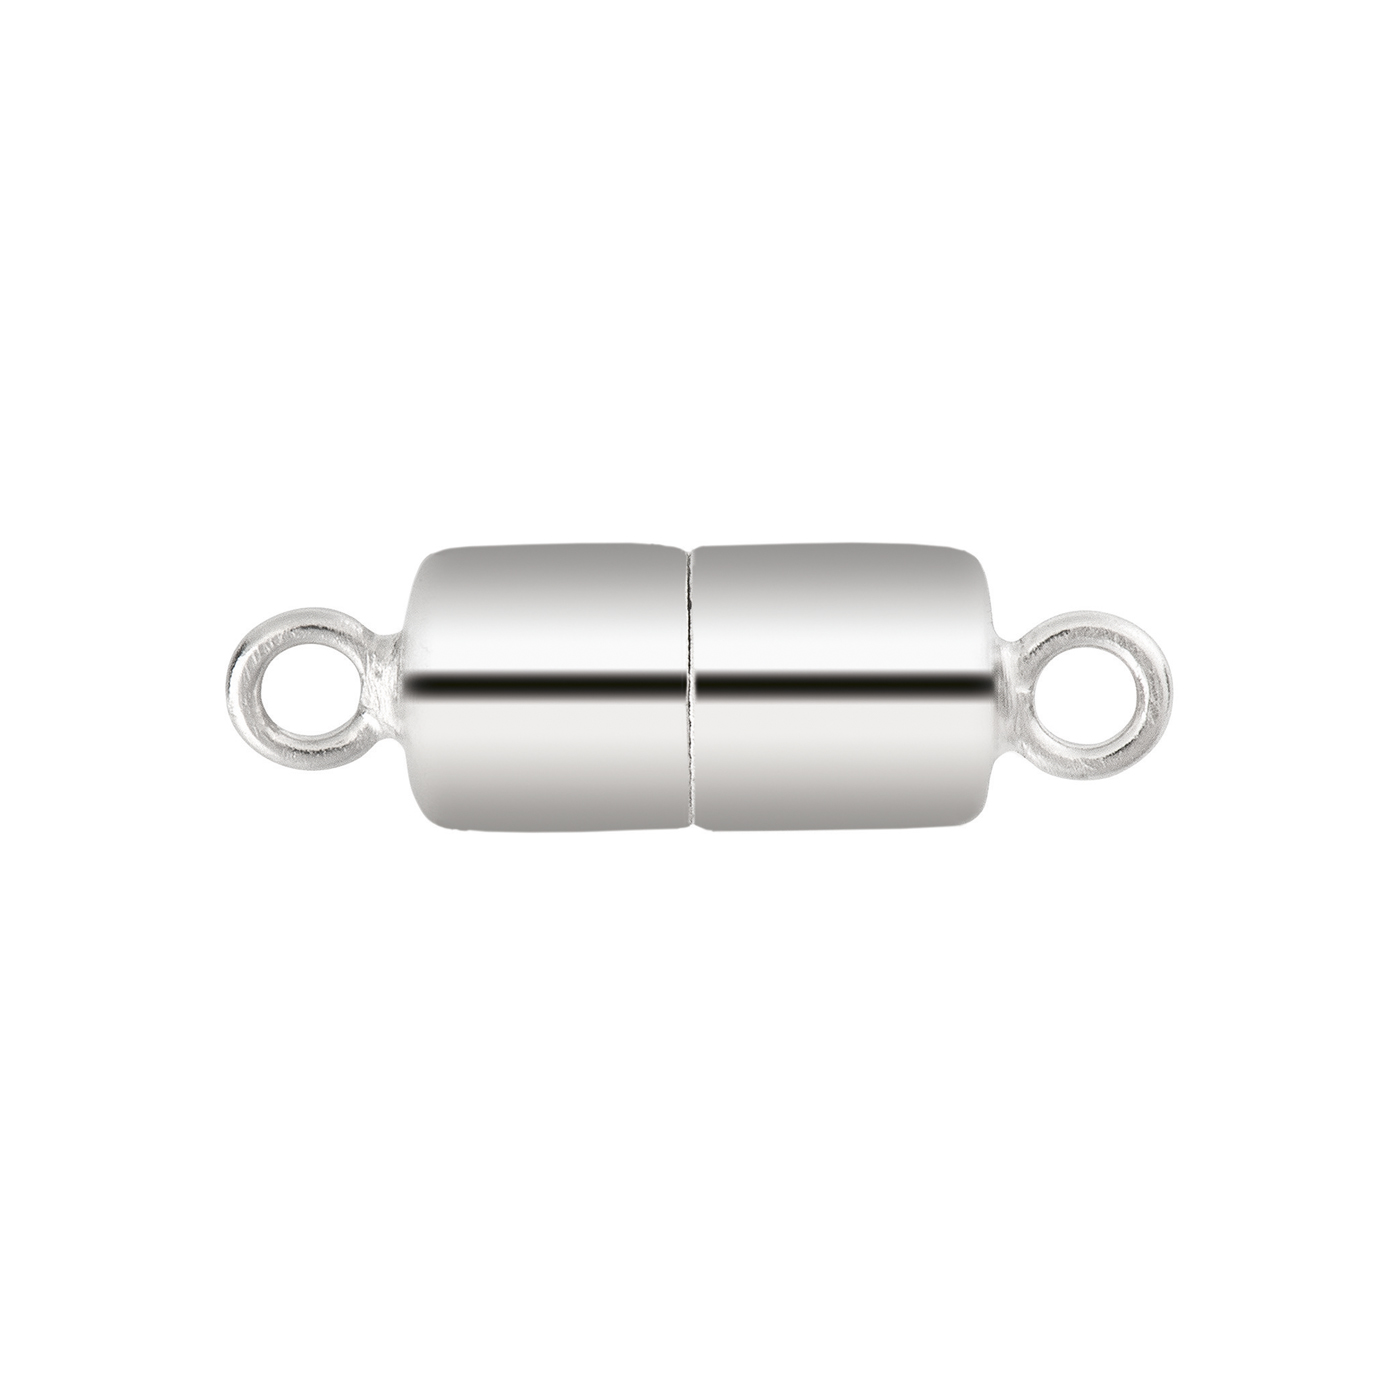 Magnetschließe, 925 Ag rhod., Zylinder, ø 8 mm, poliert - 1 Stück